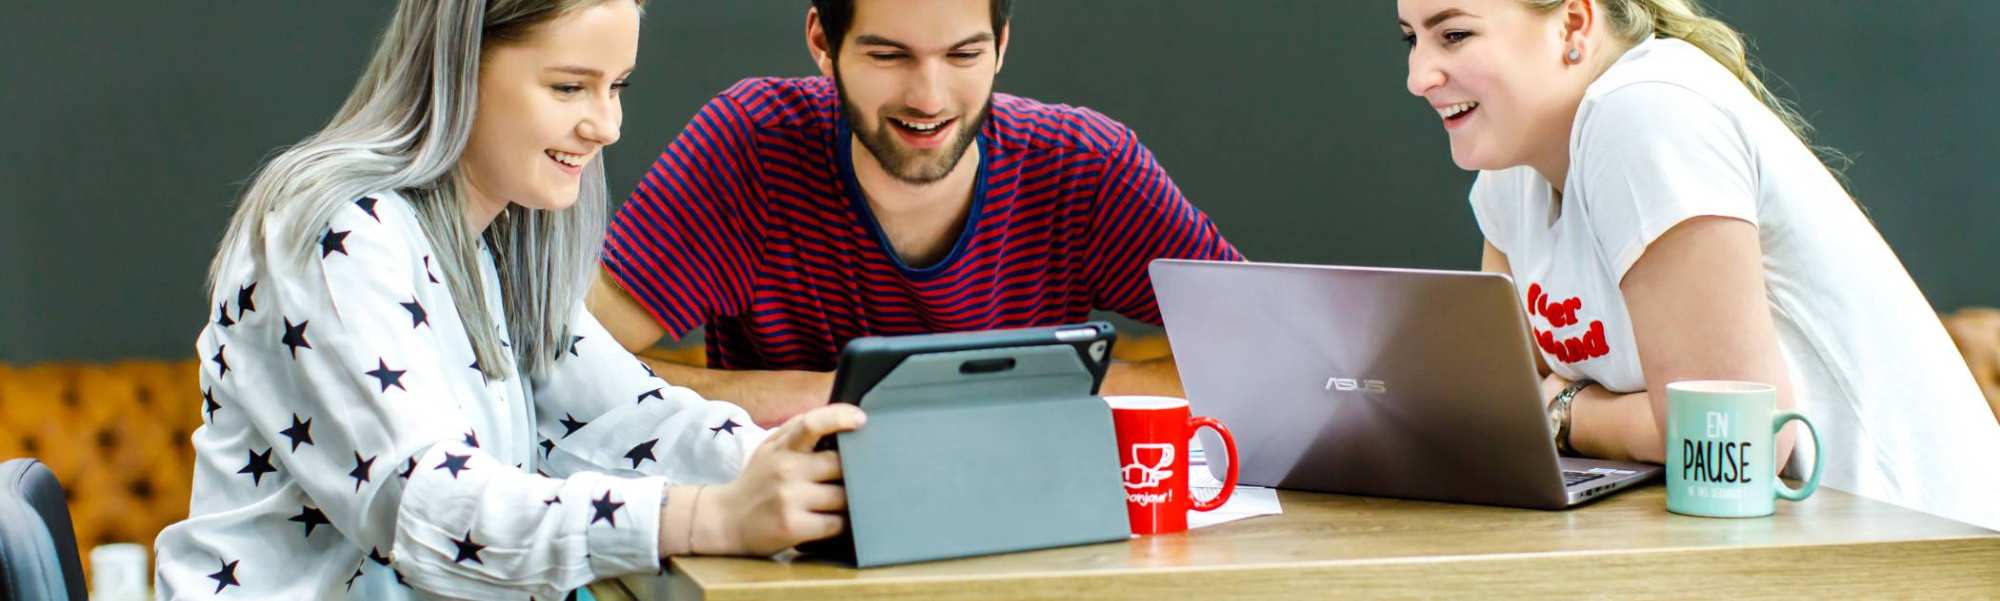 drie studenten met laptop en ipad